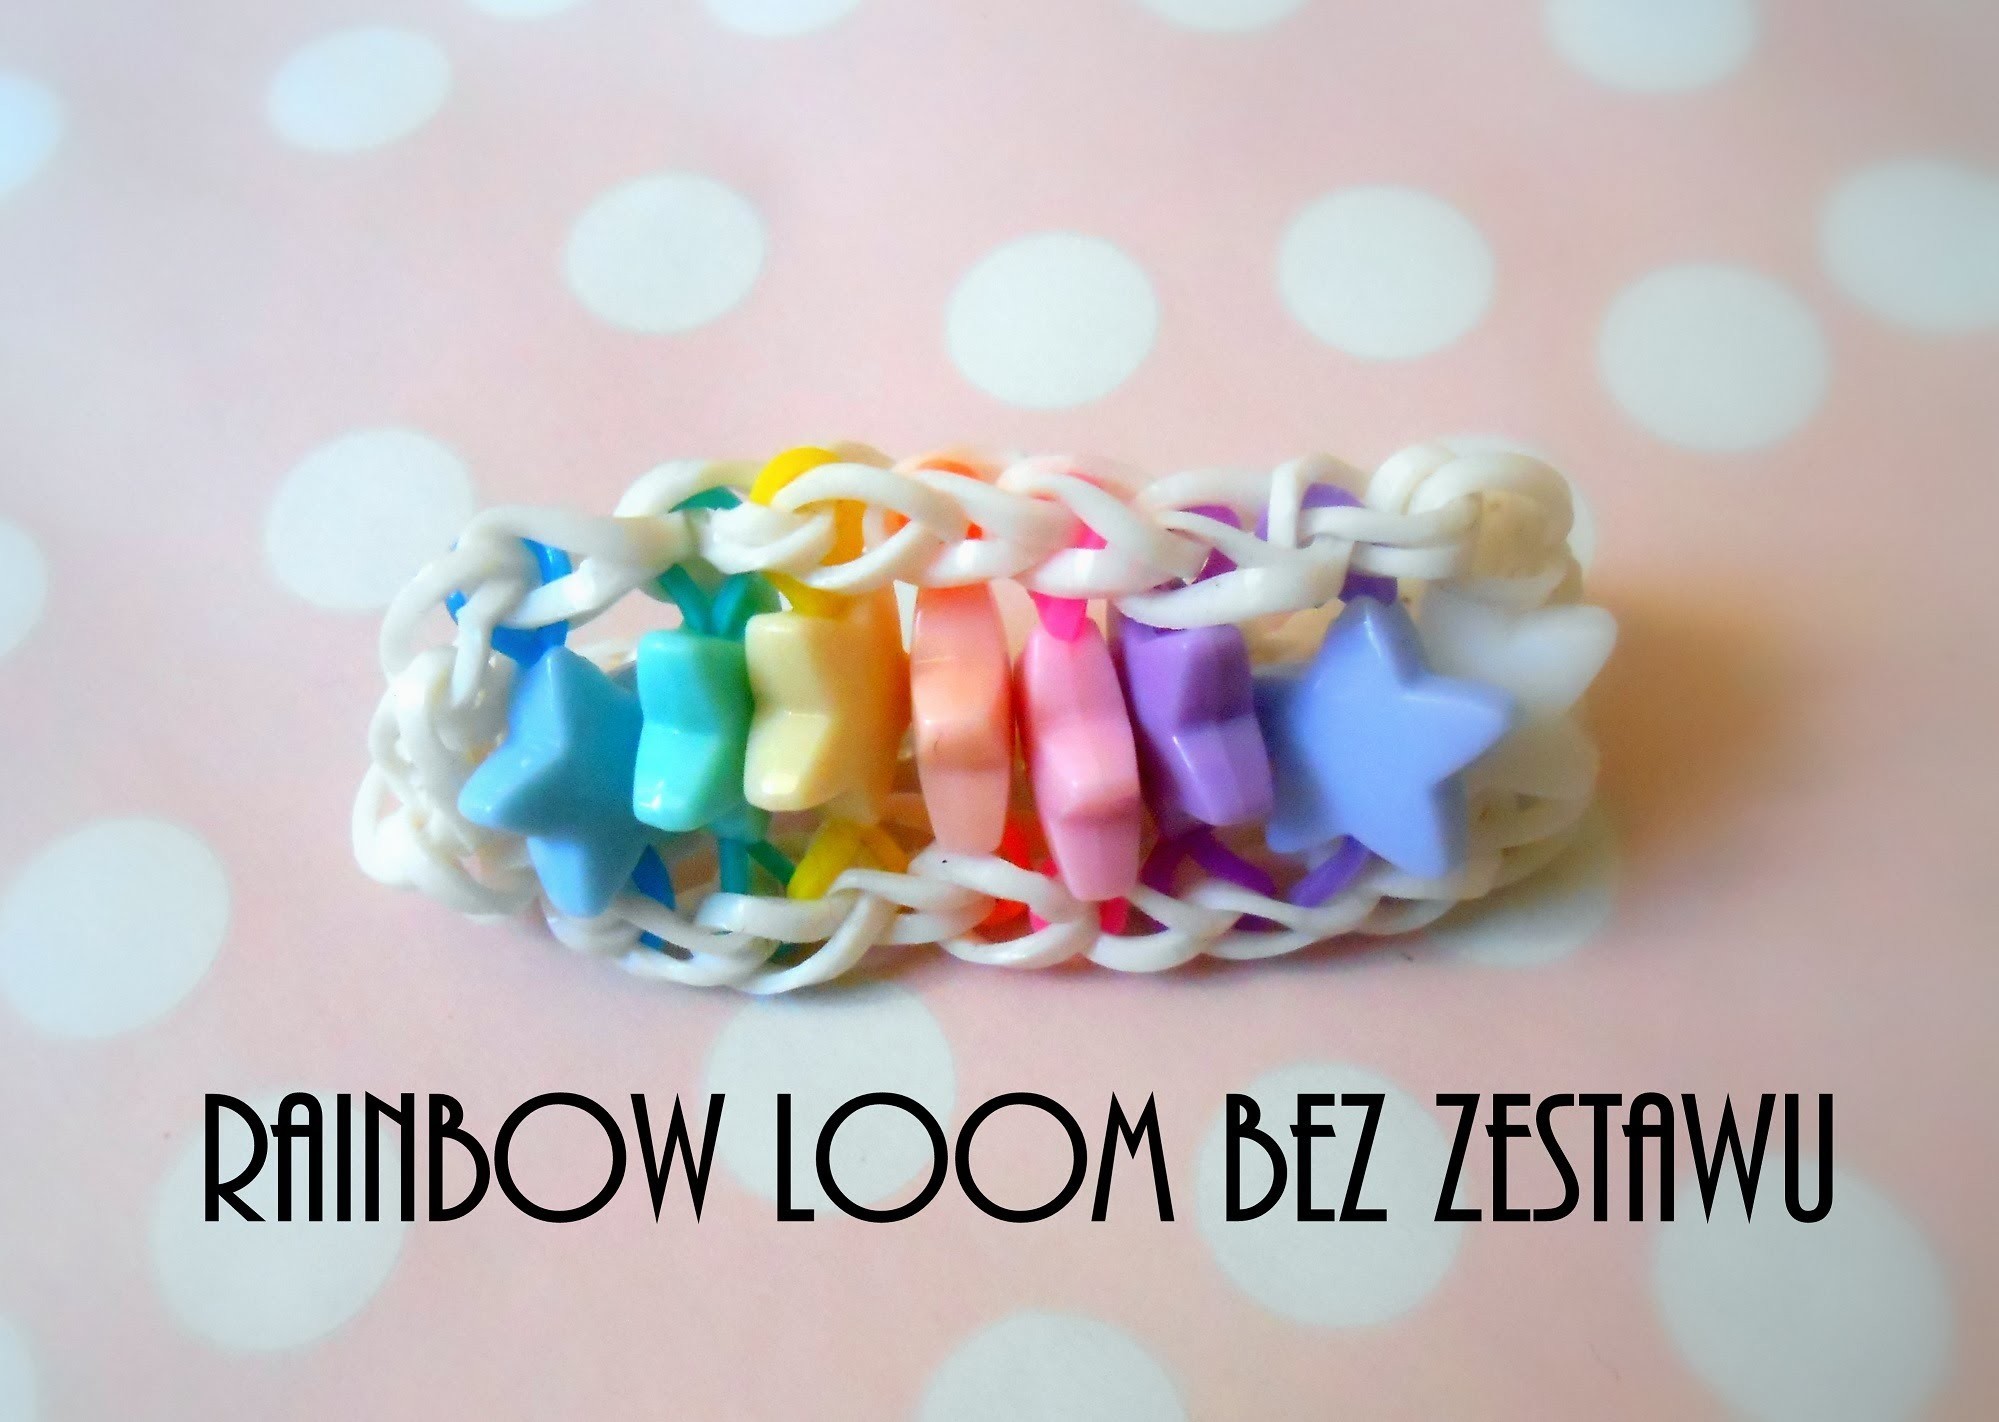 Jak zrobić bransoletkę Rainbow Loom bez zestawu?